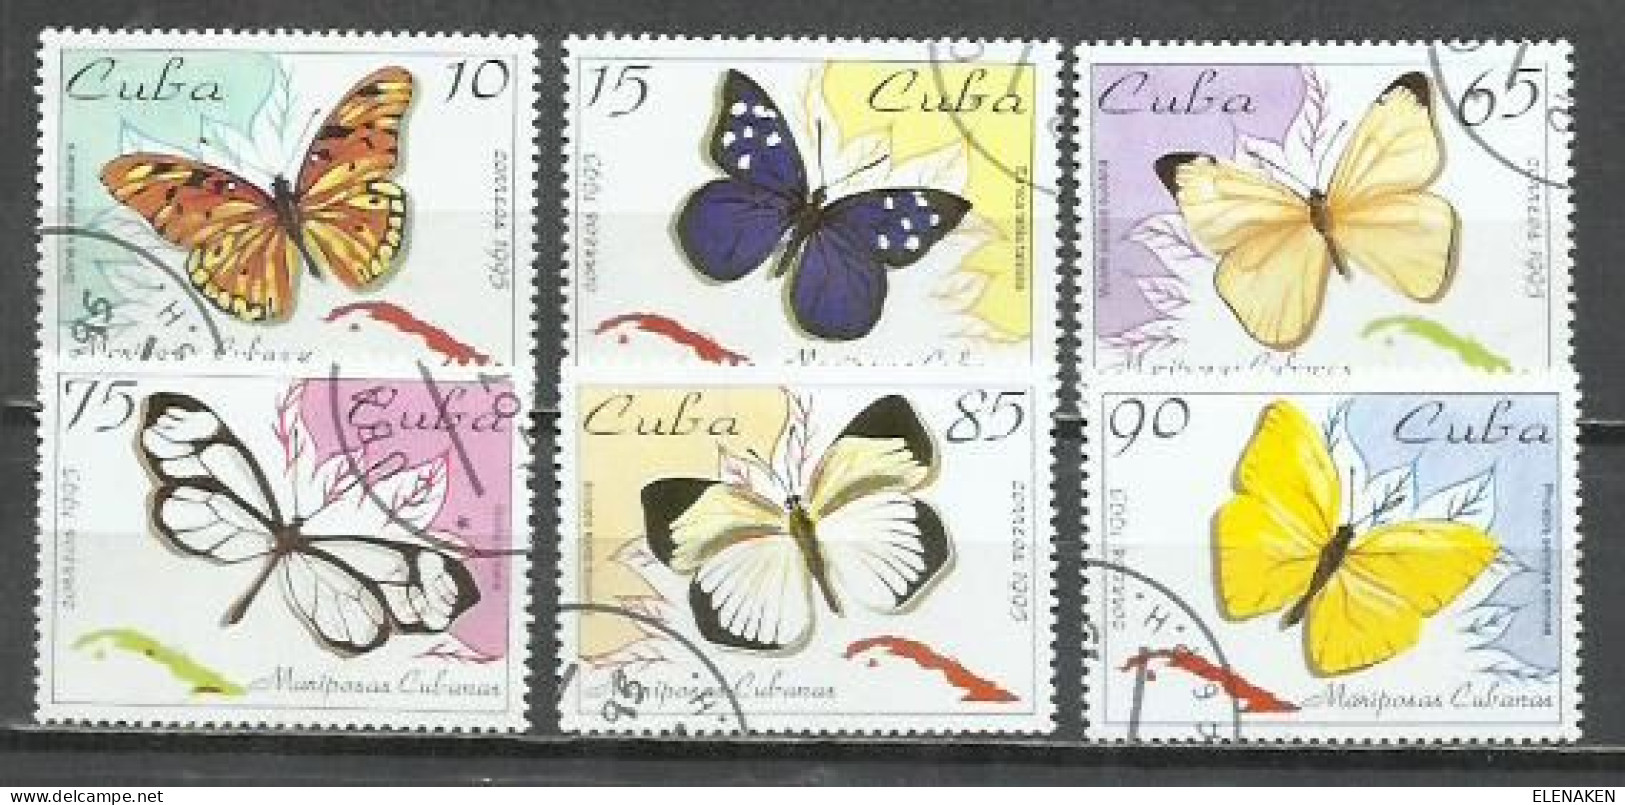 6200C-SERIE COMPLETA MARIPOSAS INSECTOS CUBA 1995 Nº 3343/3348 TEMÁTICOS BONITOS CONMEMORATIVOS - Used Stamps